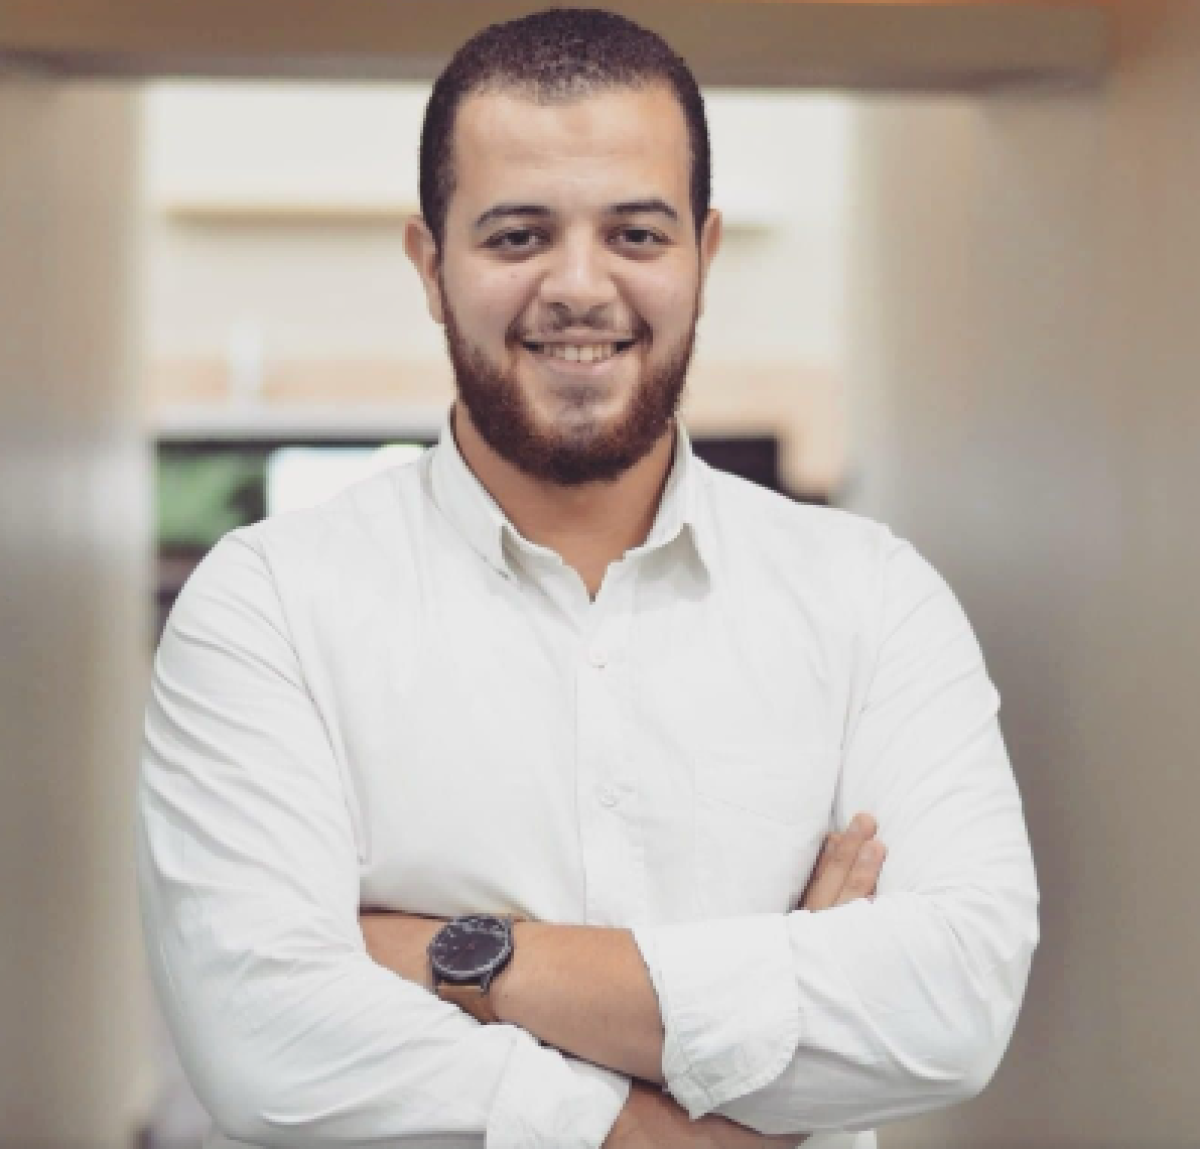 شركة إن أم هوم العقارية وجوأدز تطلقان أحدث مجمع أعمال متكامل الخدمات بالقاهرة الجديدة